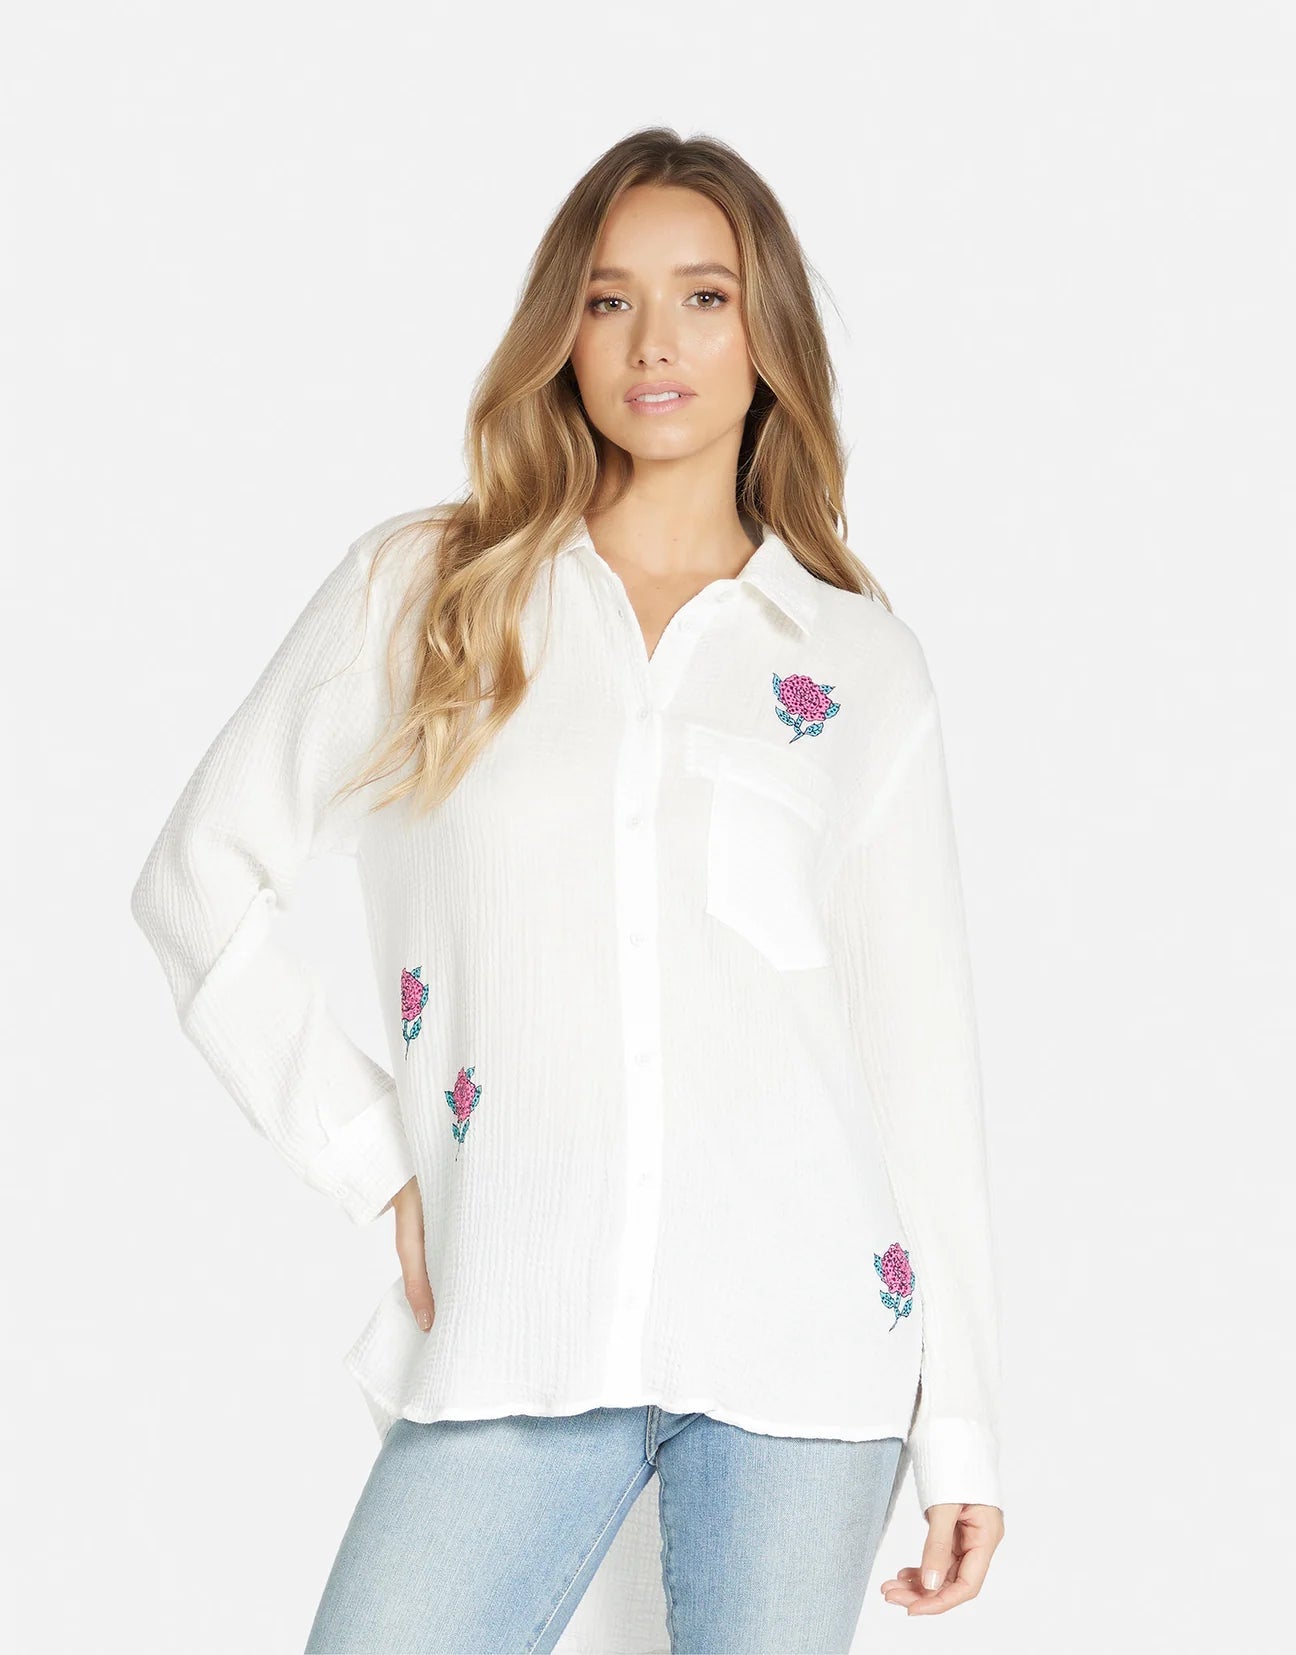 Shop Lauren Moshi Dara Crystal Roses Shirt - Premium Denim Shirt from Lauren Moshi Online now at Spoiled Brat 